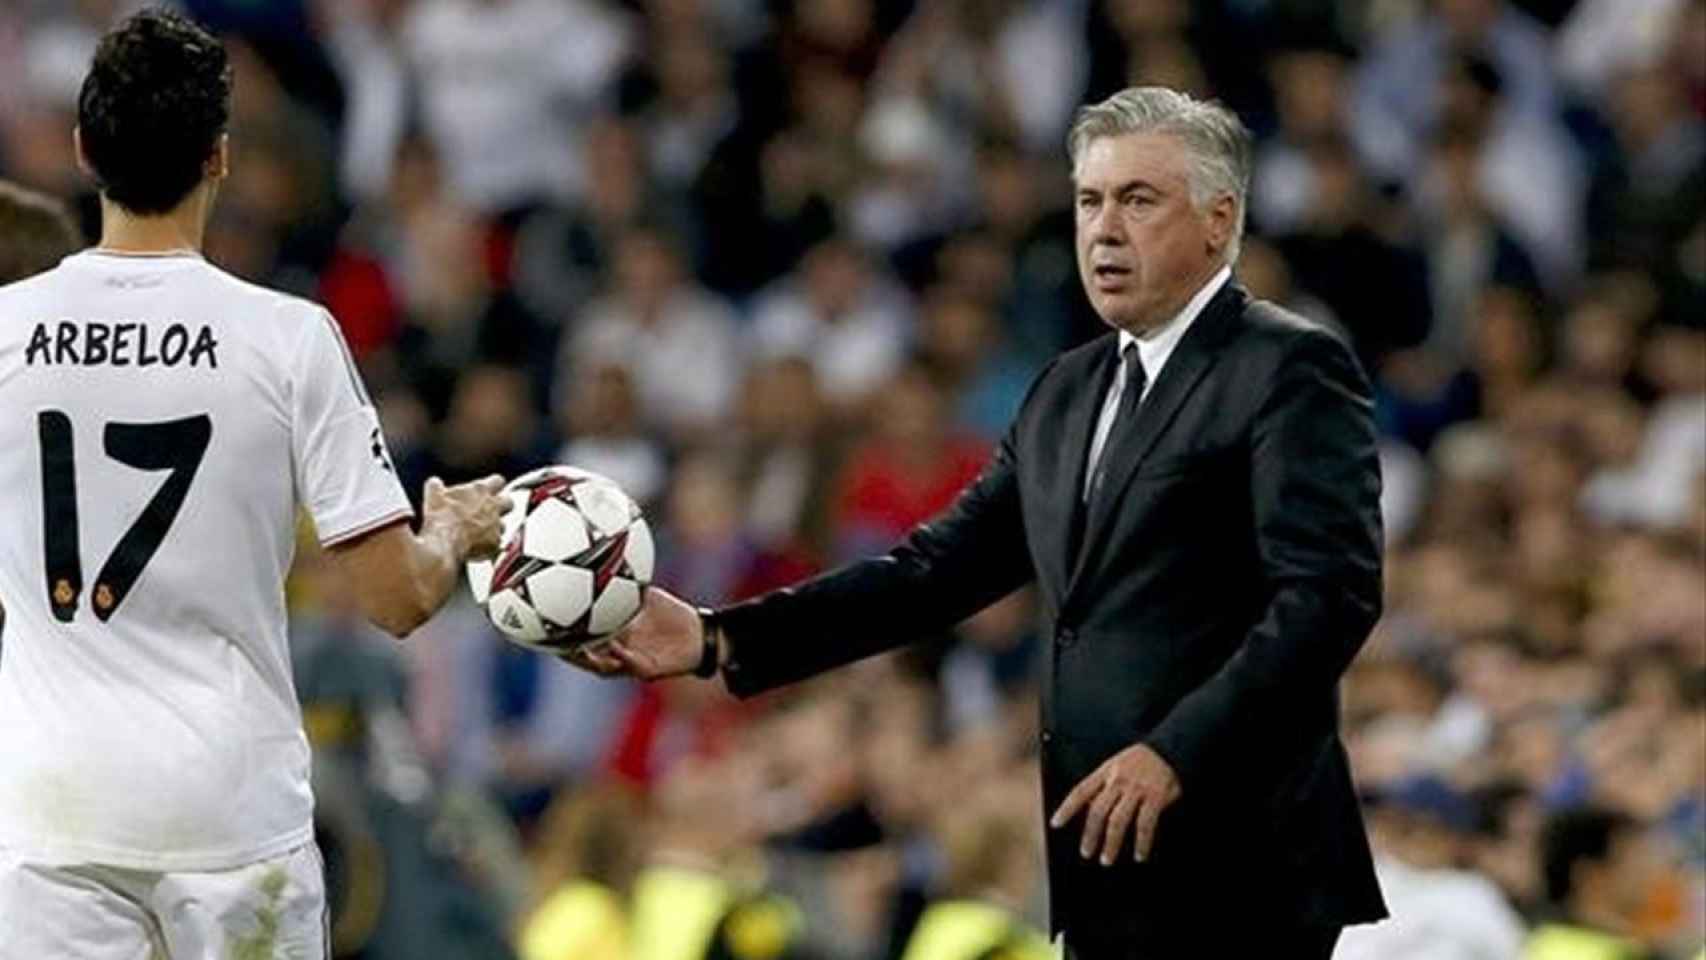 Álvaro Arbeloa y Carlo Ancelotti, durante un partido del Real Madrid